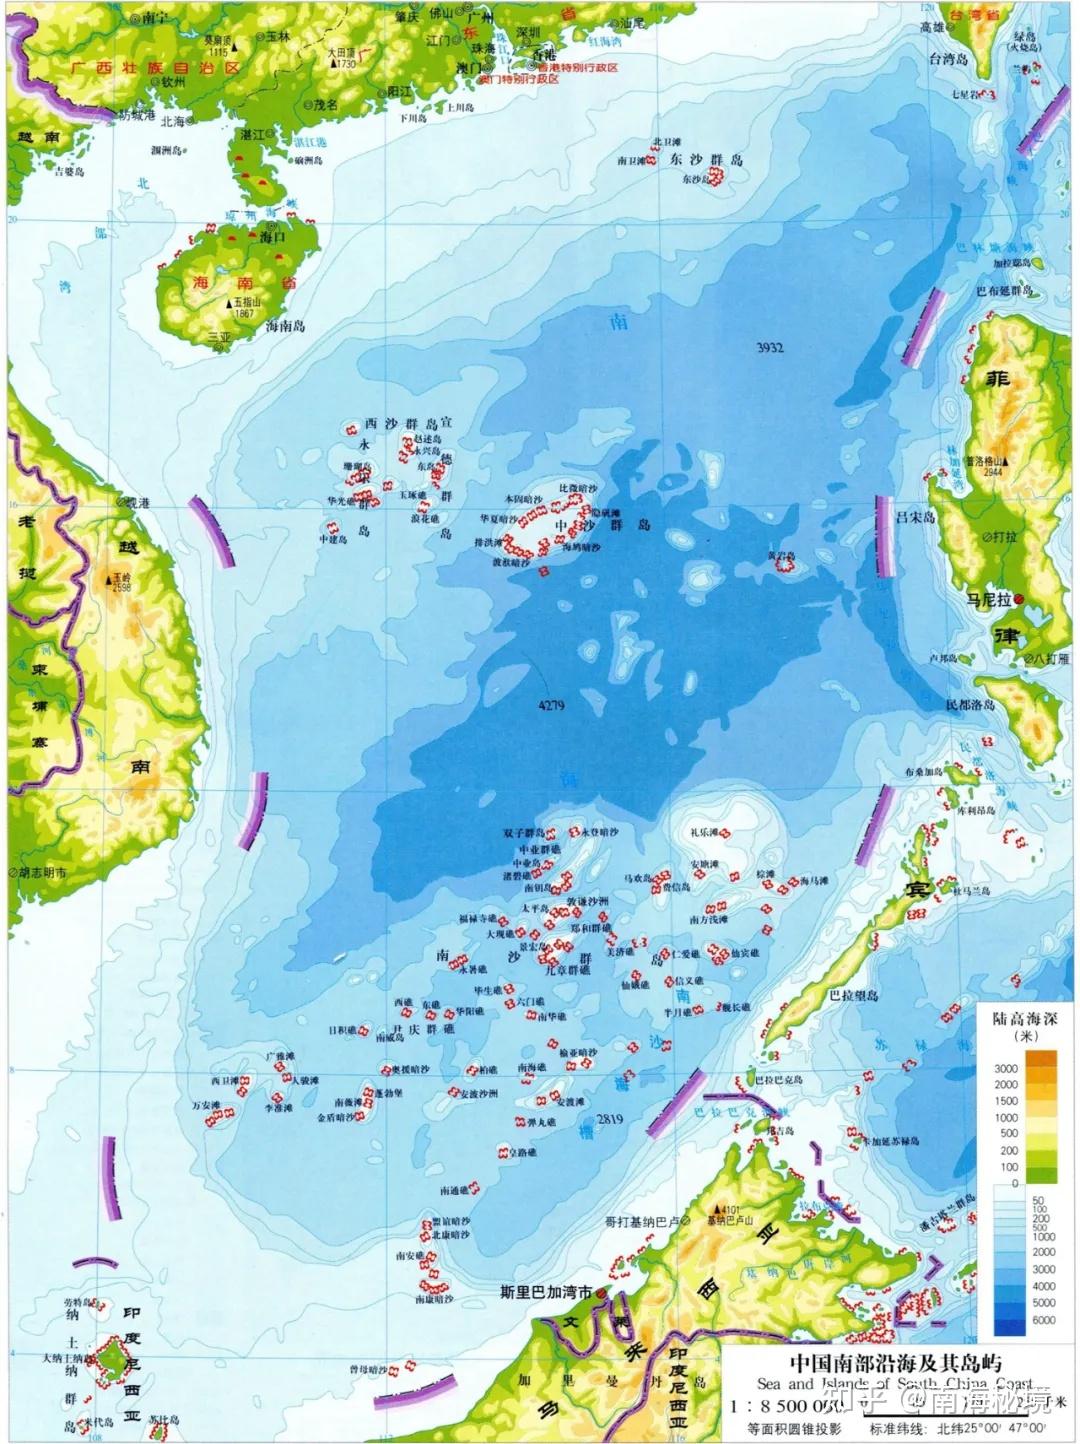 谷歌地球更新中国南海岛礁卫星图至今年3-8月